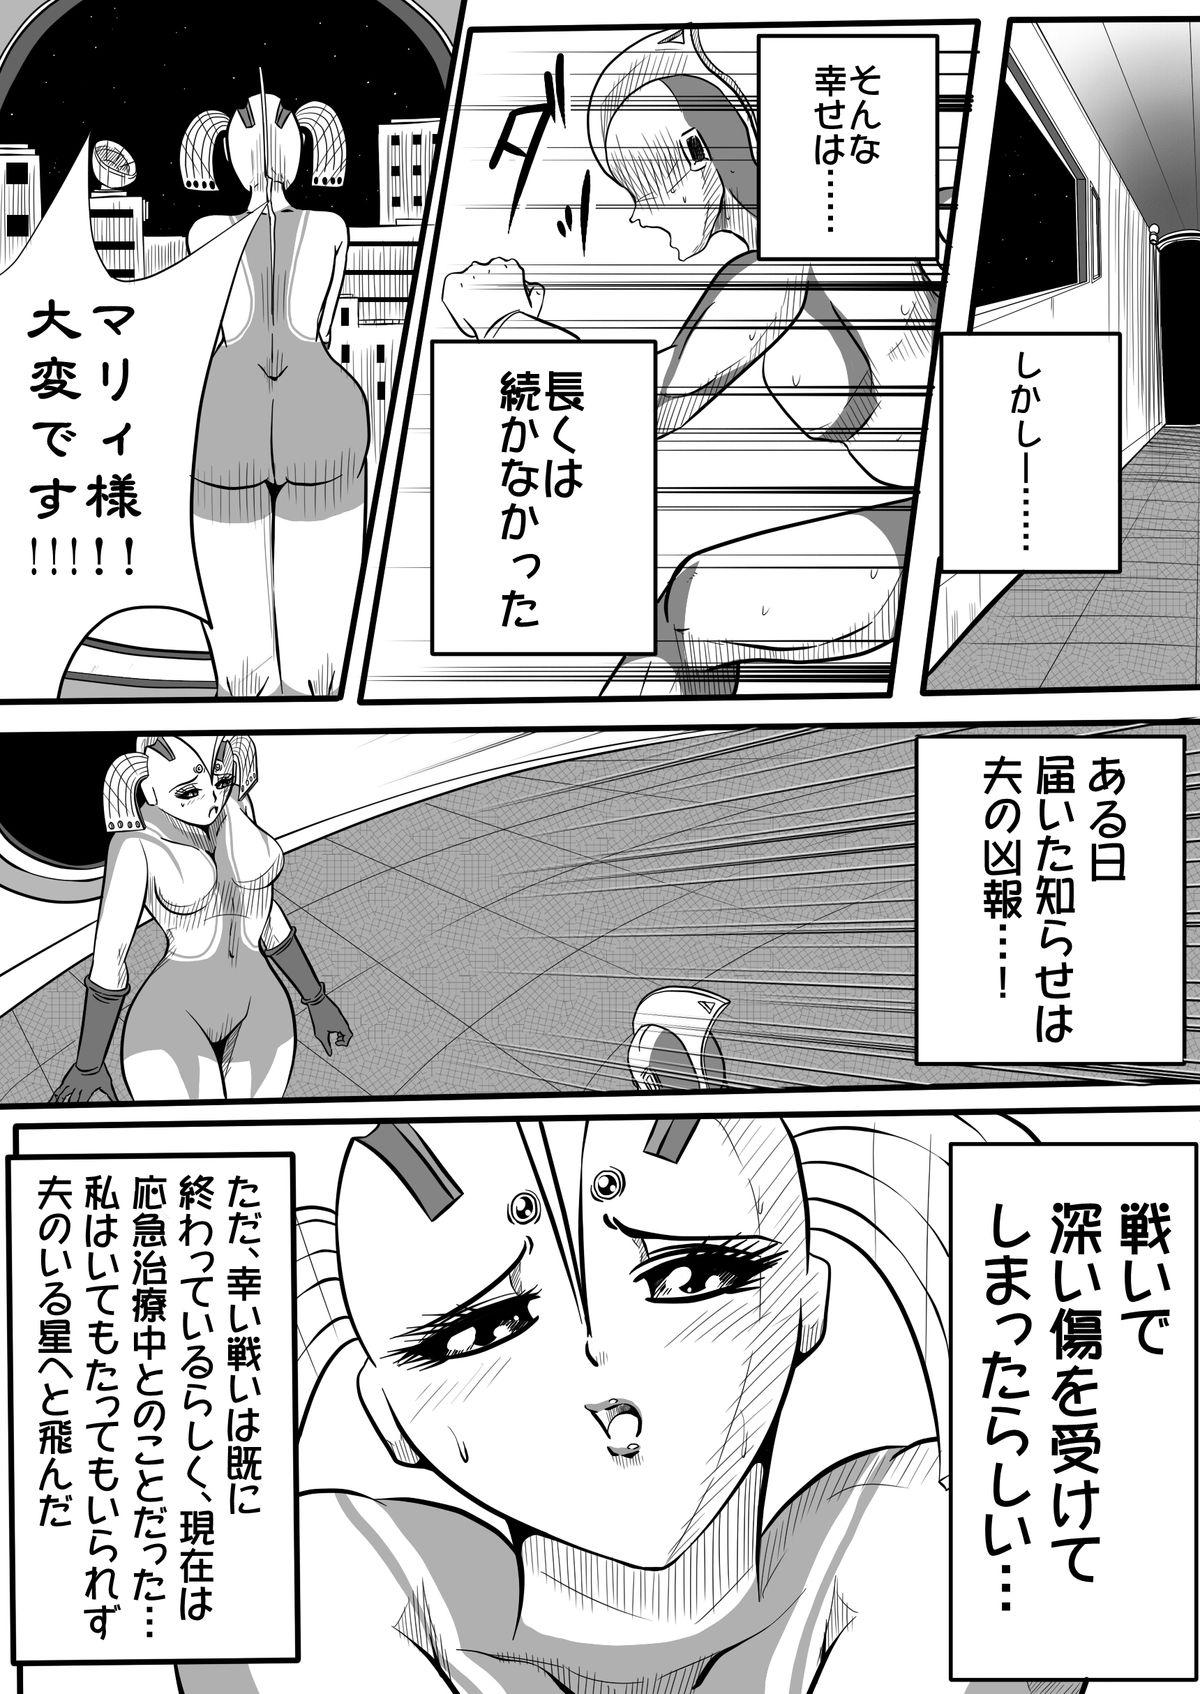 Hole Ultra Mairi Monogatari 2 - Shade no Erona Hon IV - Ultraman Oldvsyoung - Page 7